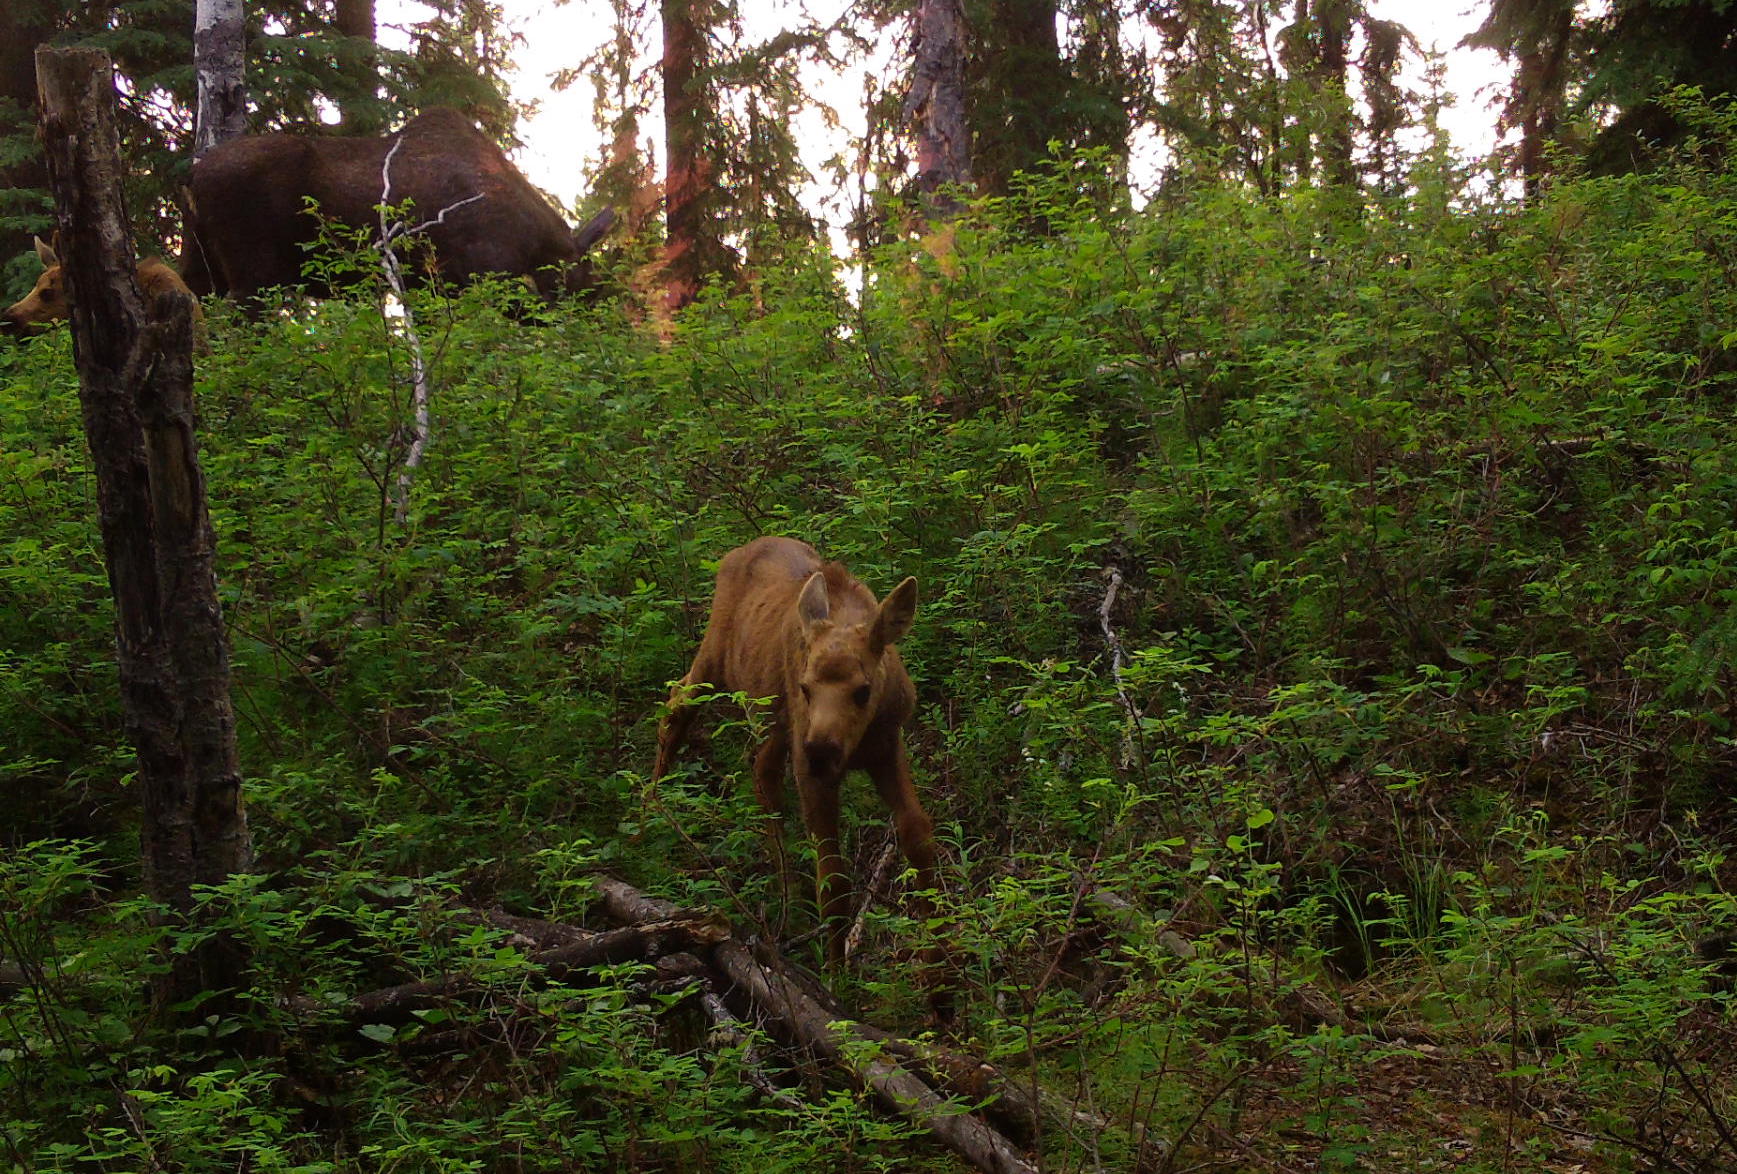 a newborn moose calf in a landscape of green bushes